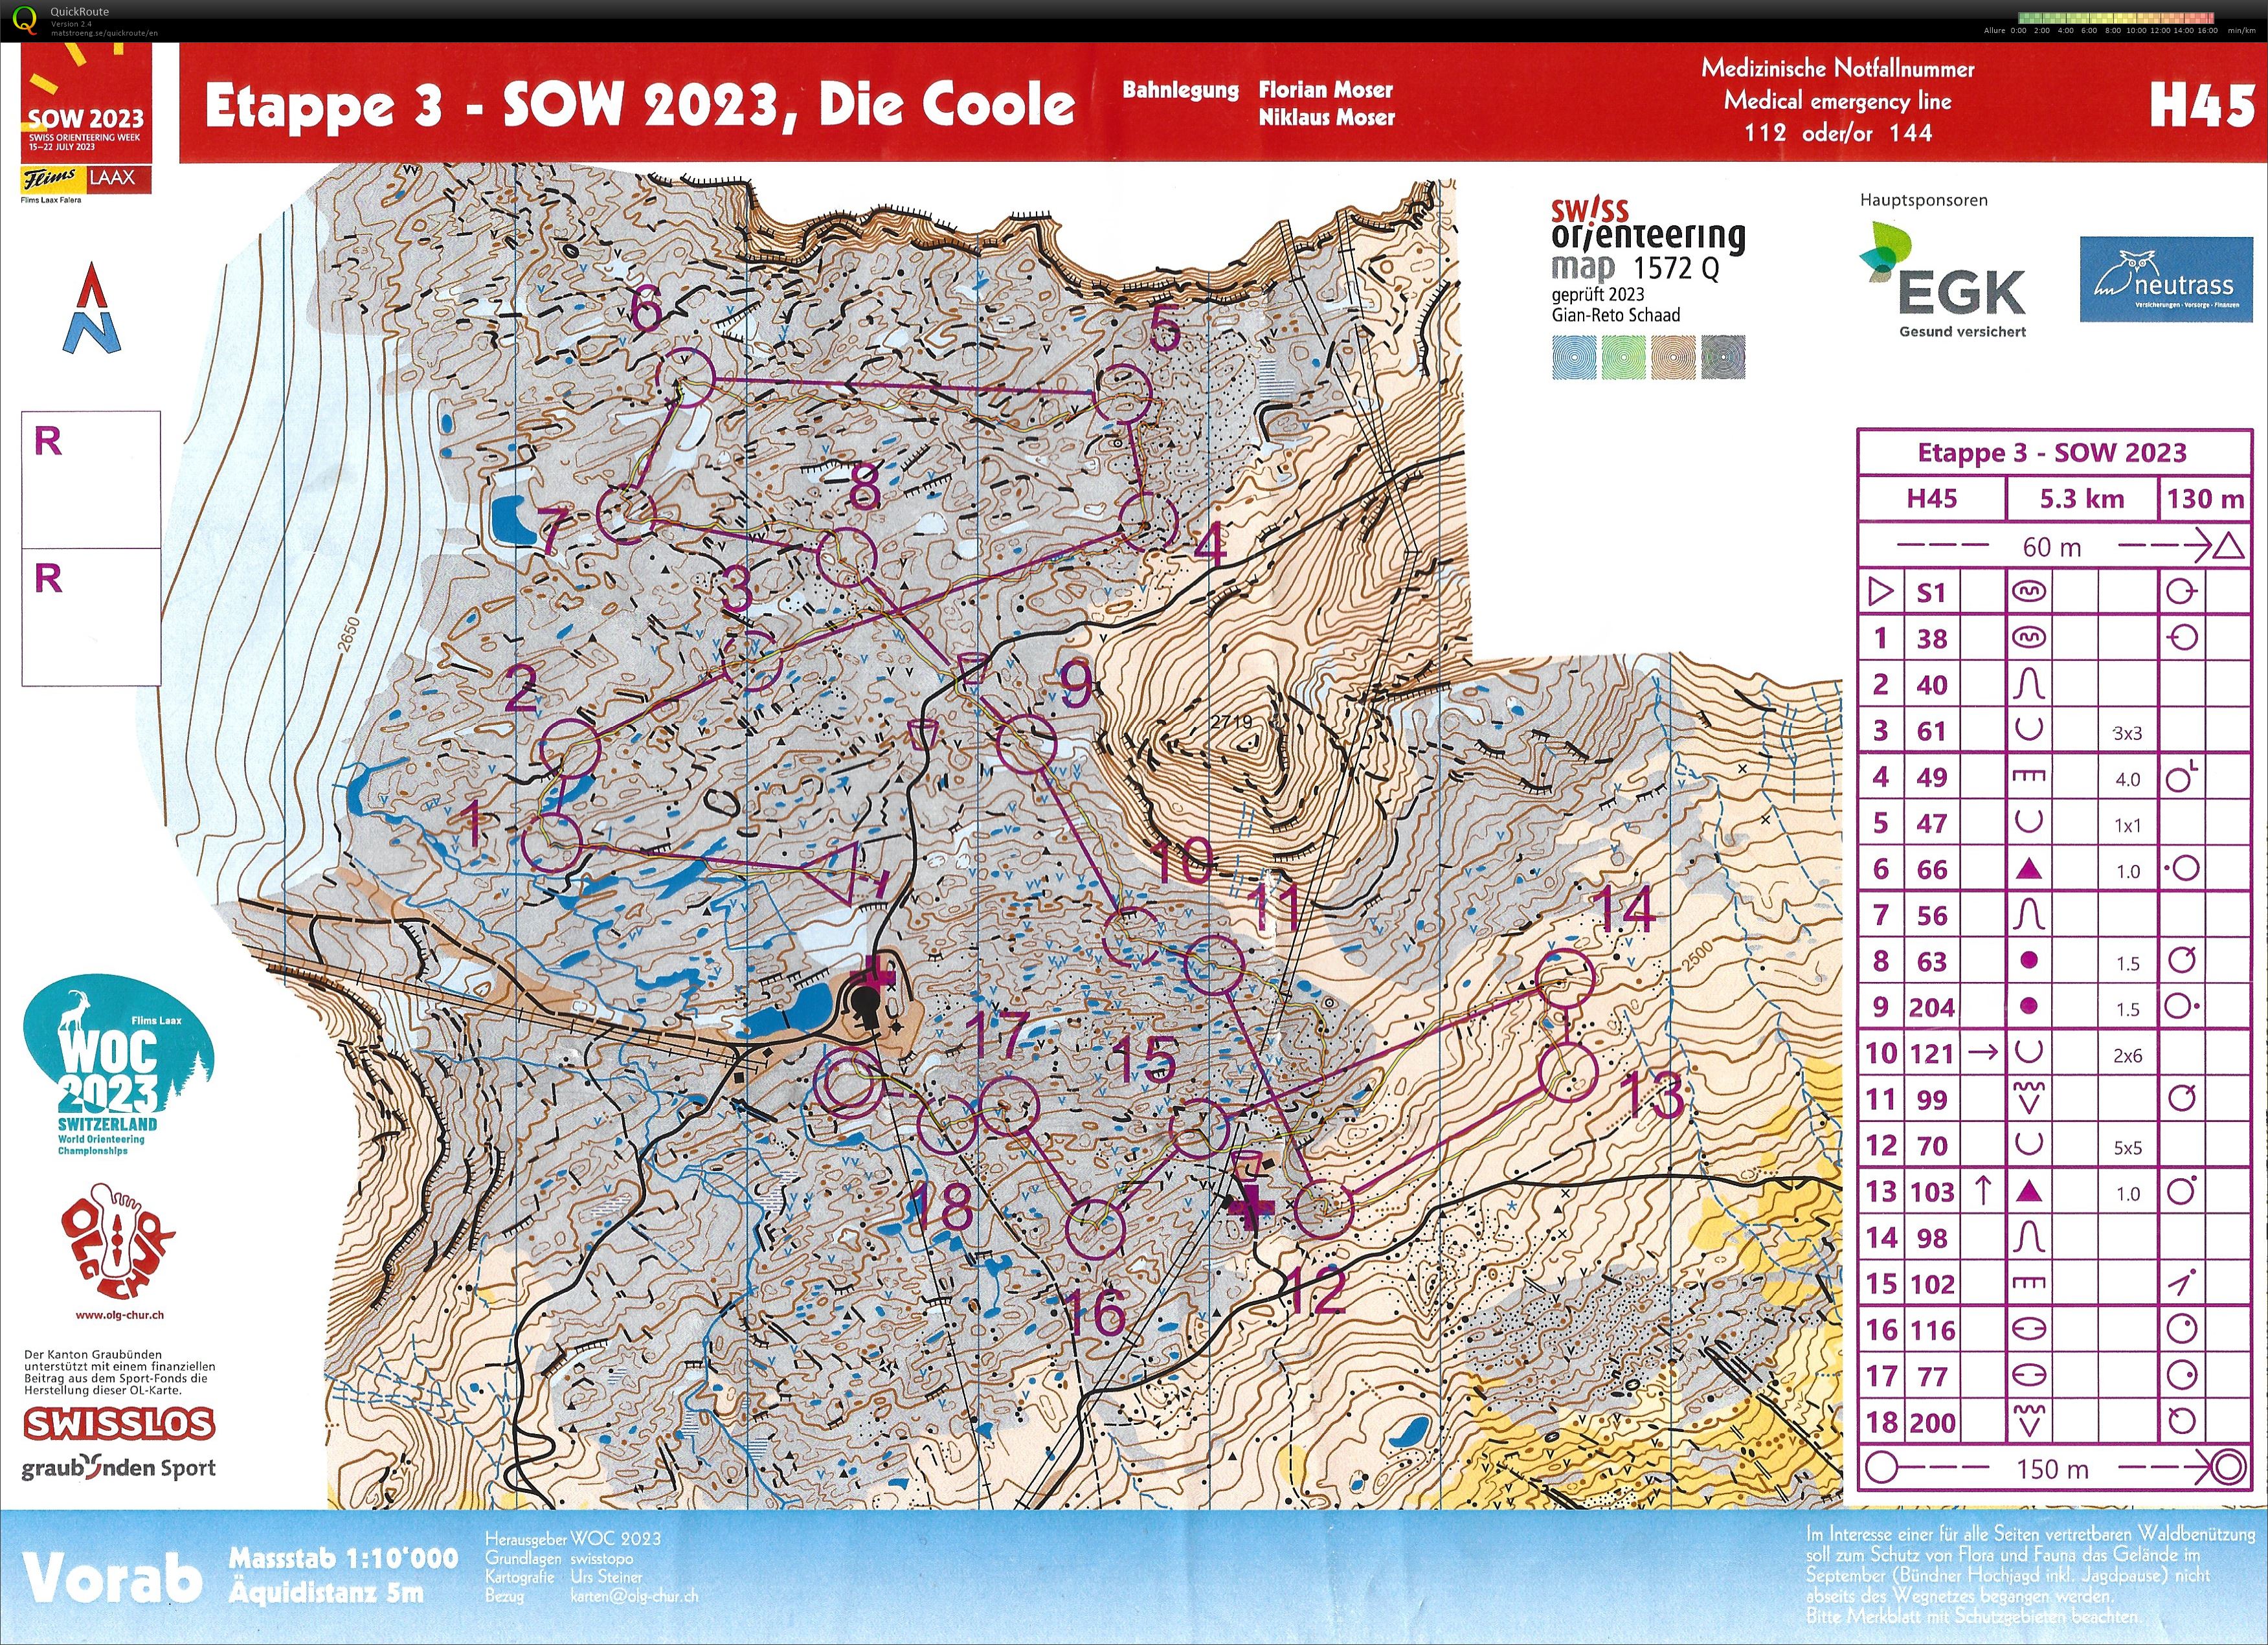 Swiss Orienteering Week - Etape 3 - Die Coole (20/07/2023)